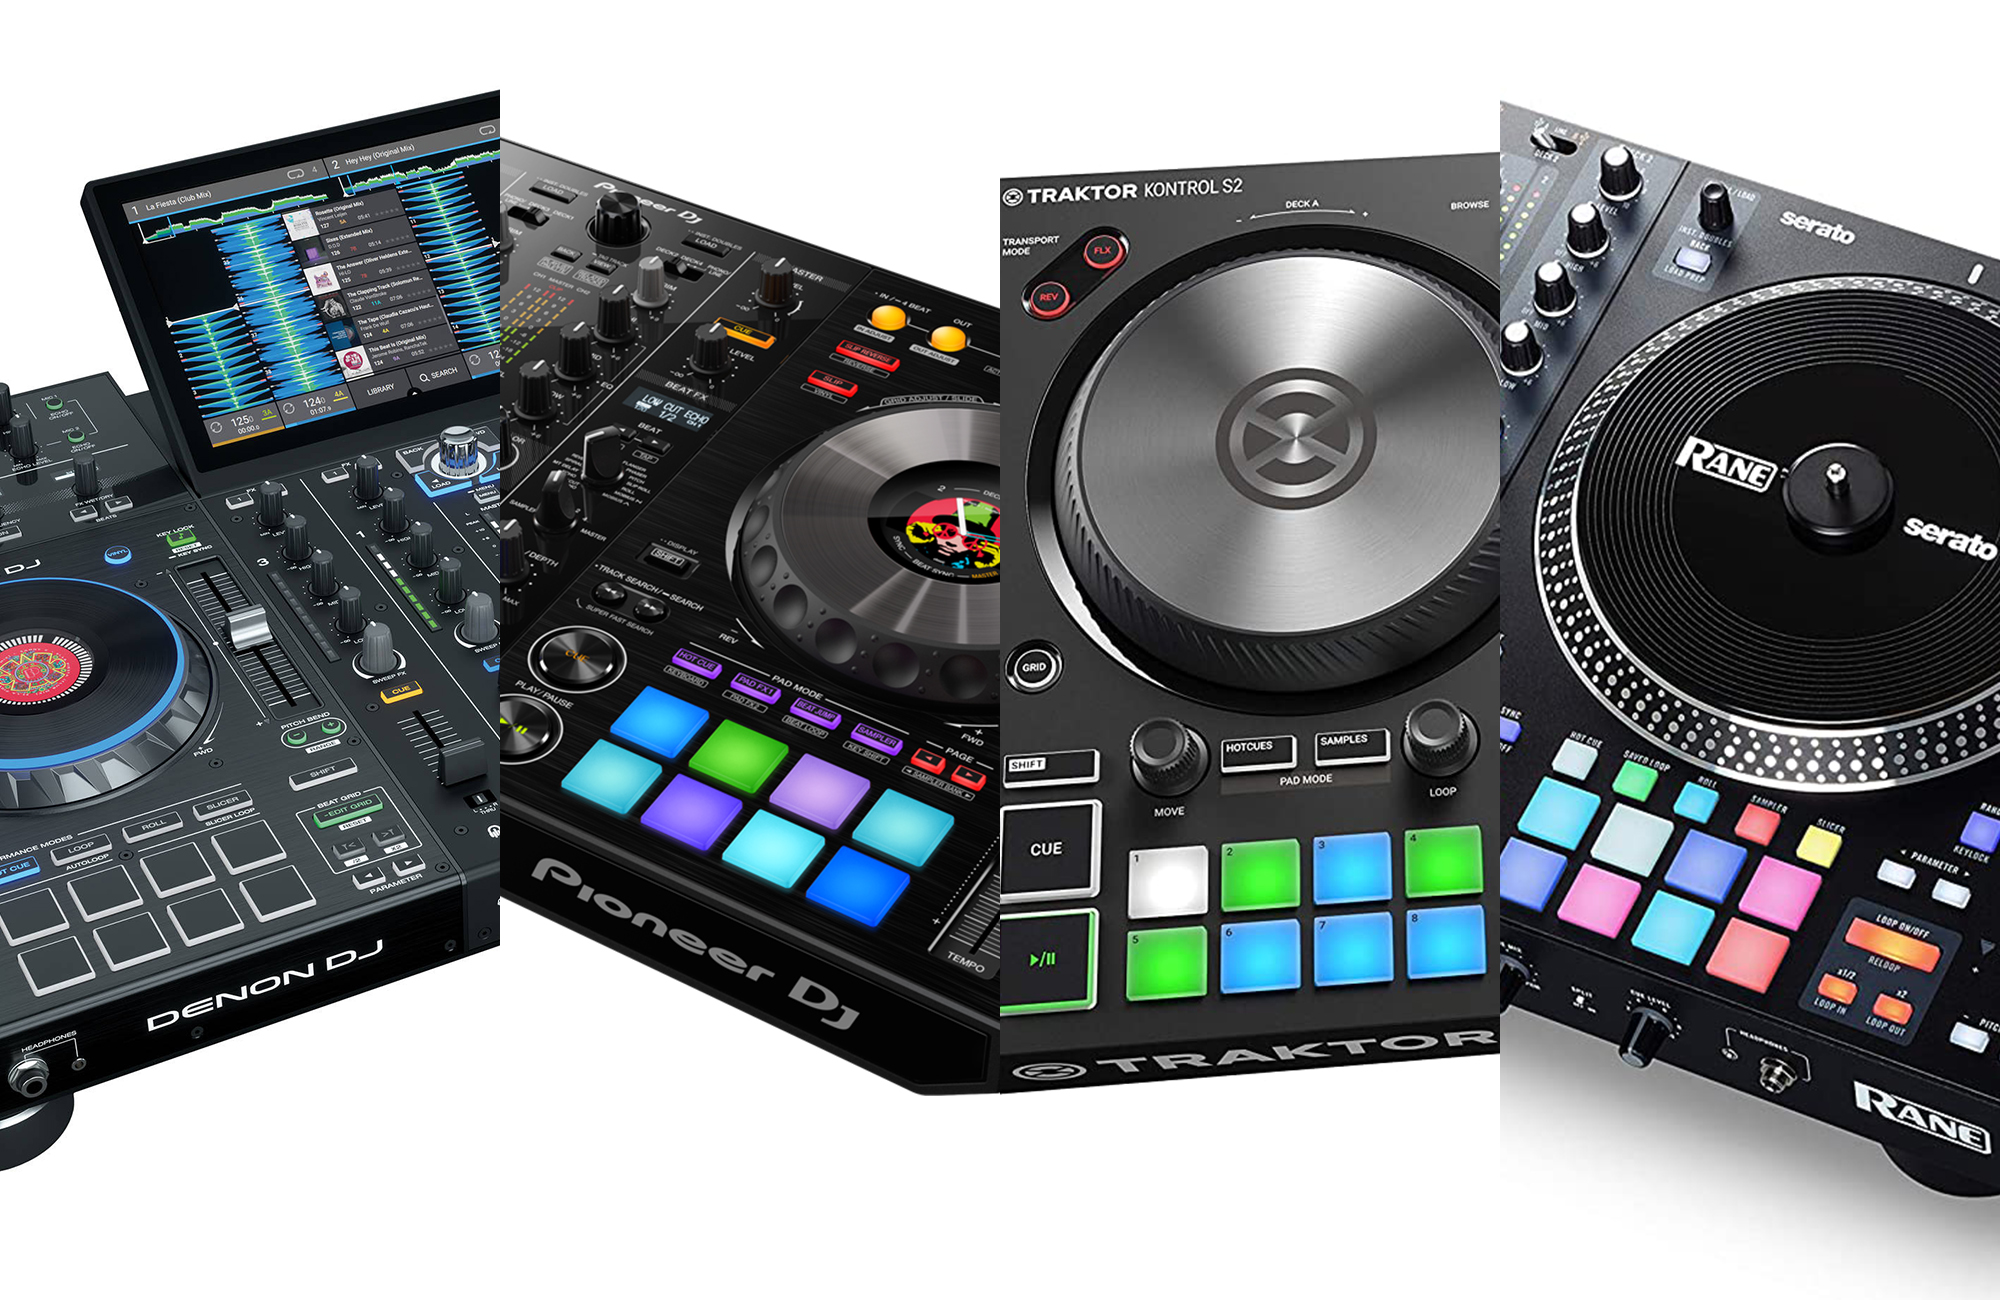 Professional DJ Equipment, Denon DJ